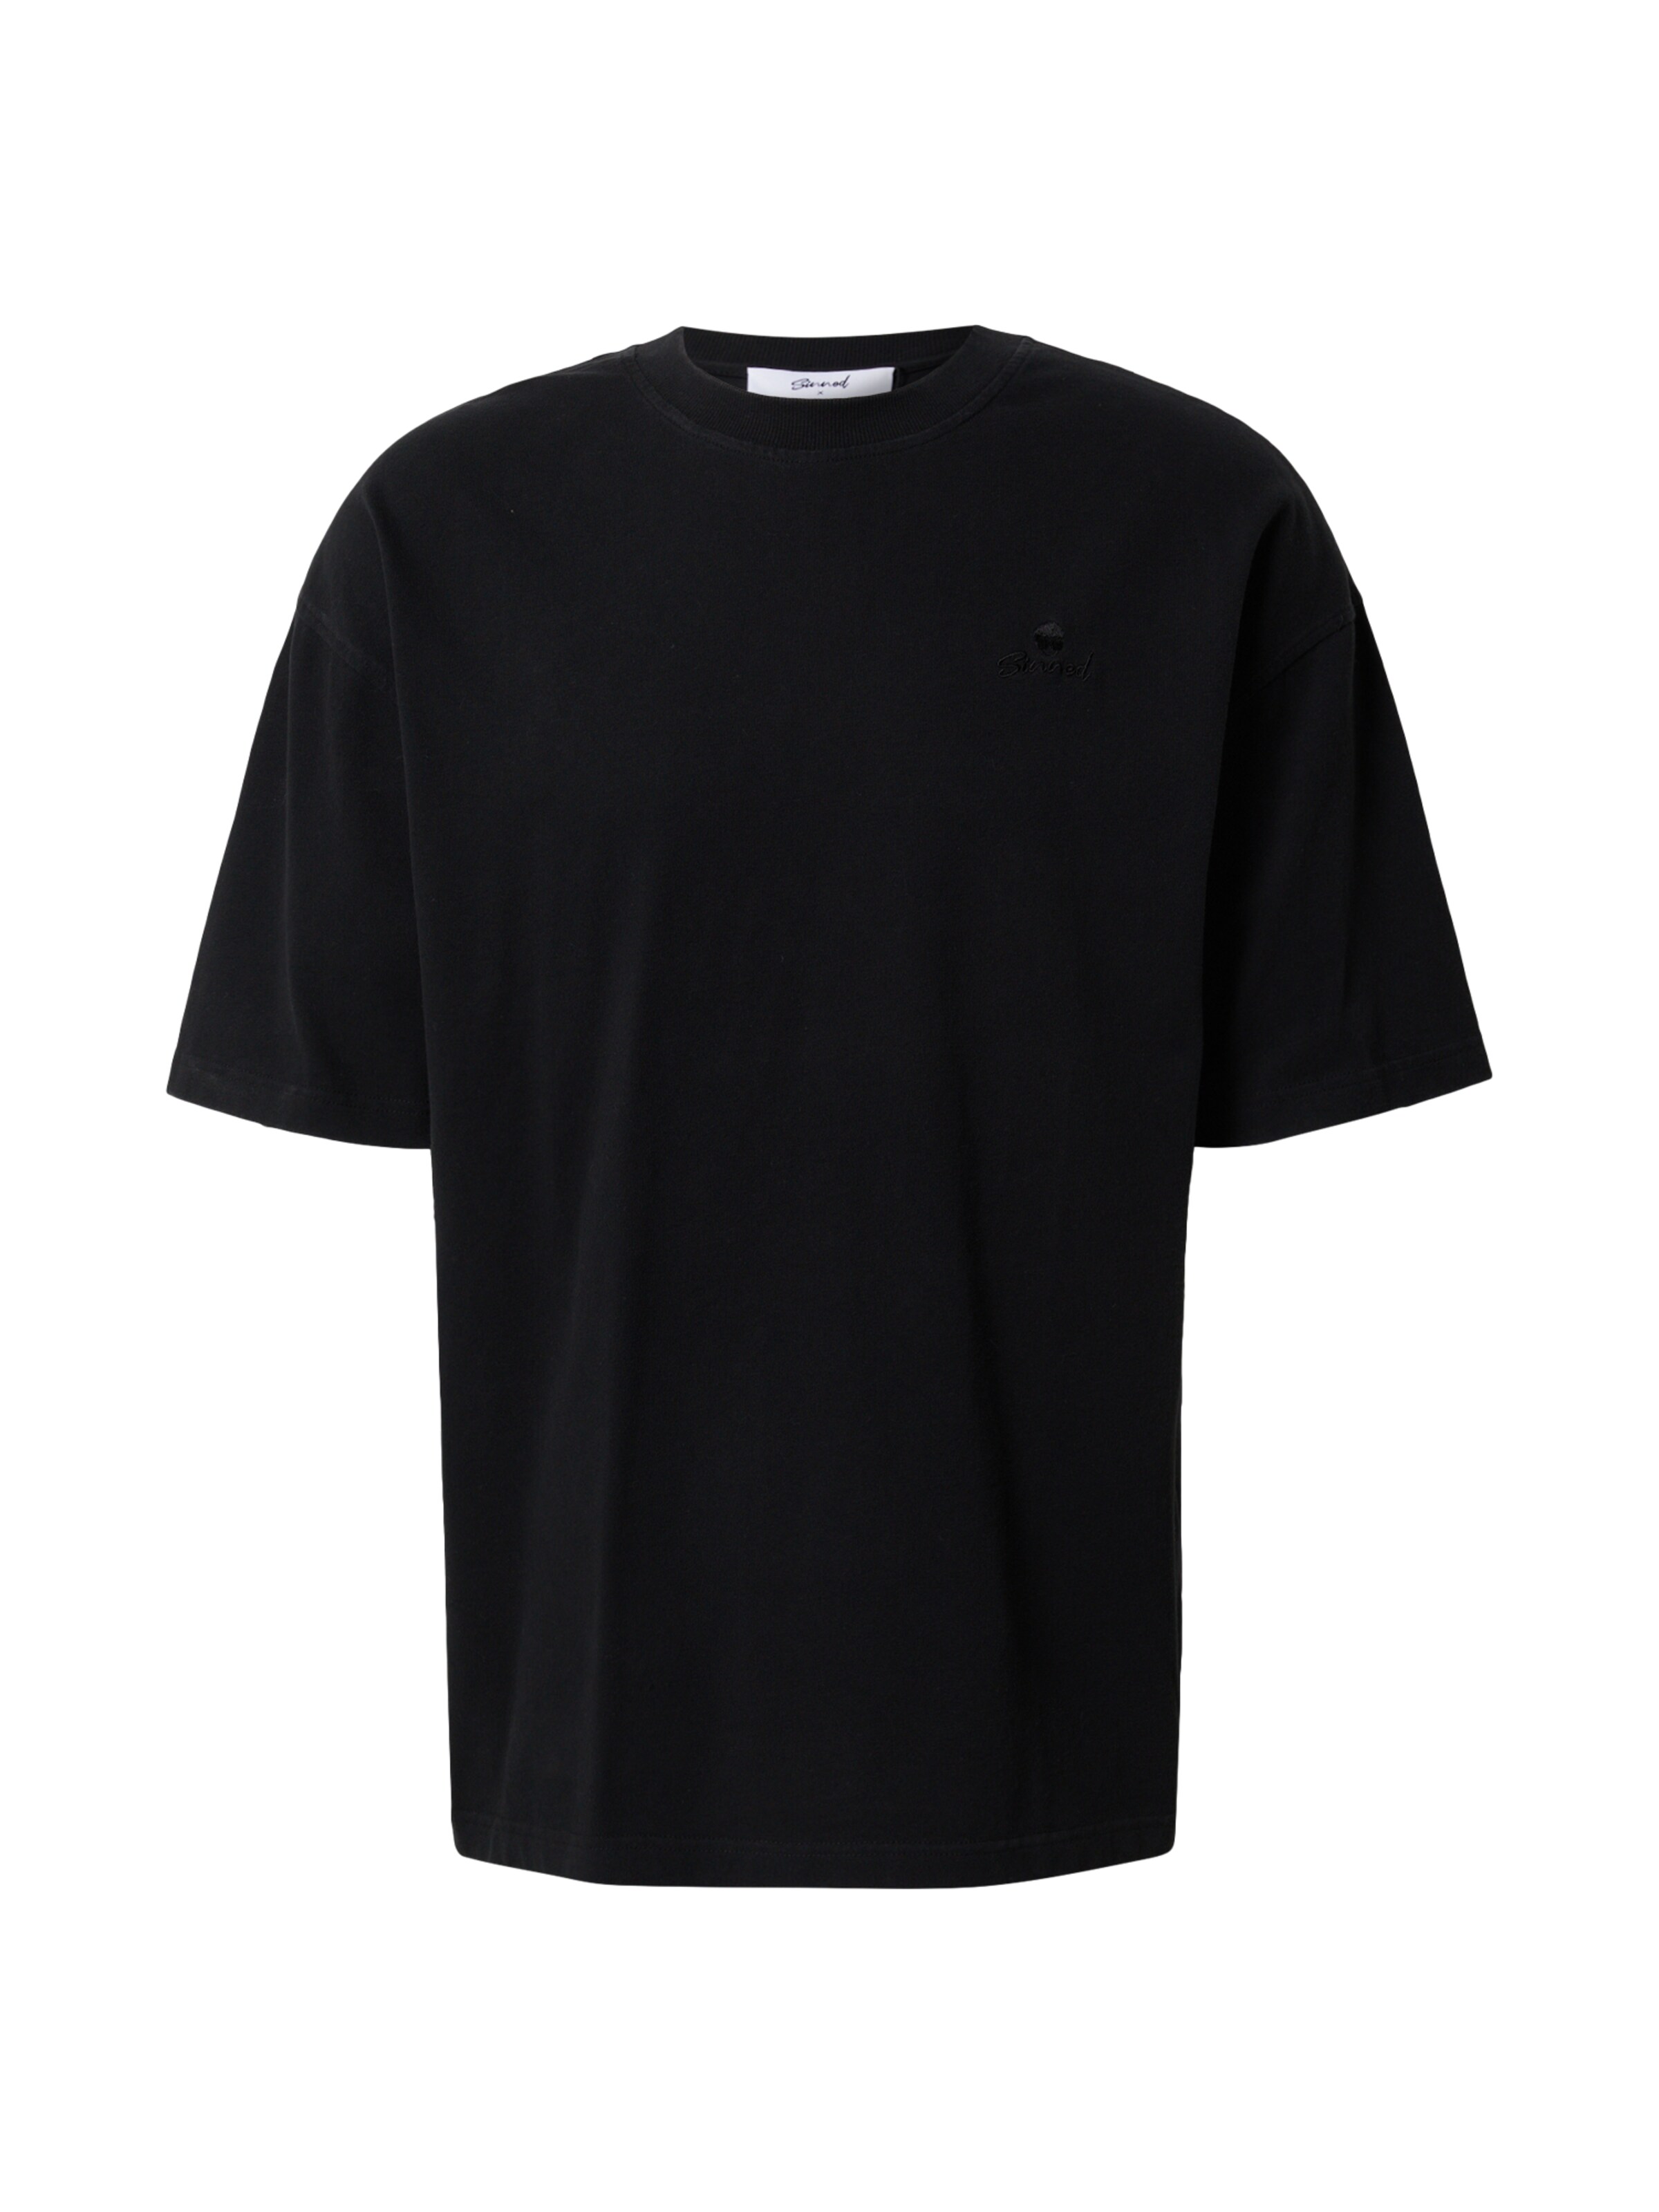 Nero XL sconto 54% NoName T-shirt MODA UOMO Camicie & T-shirt Termico 